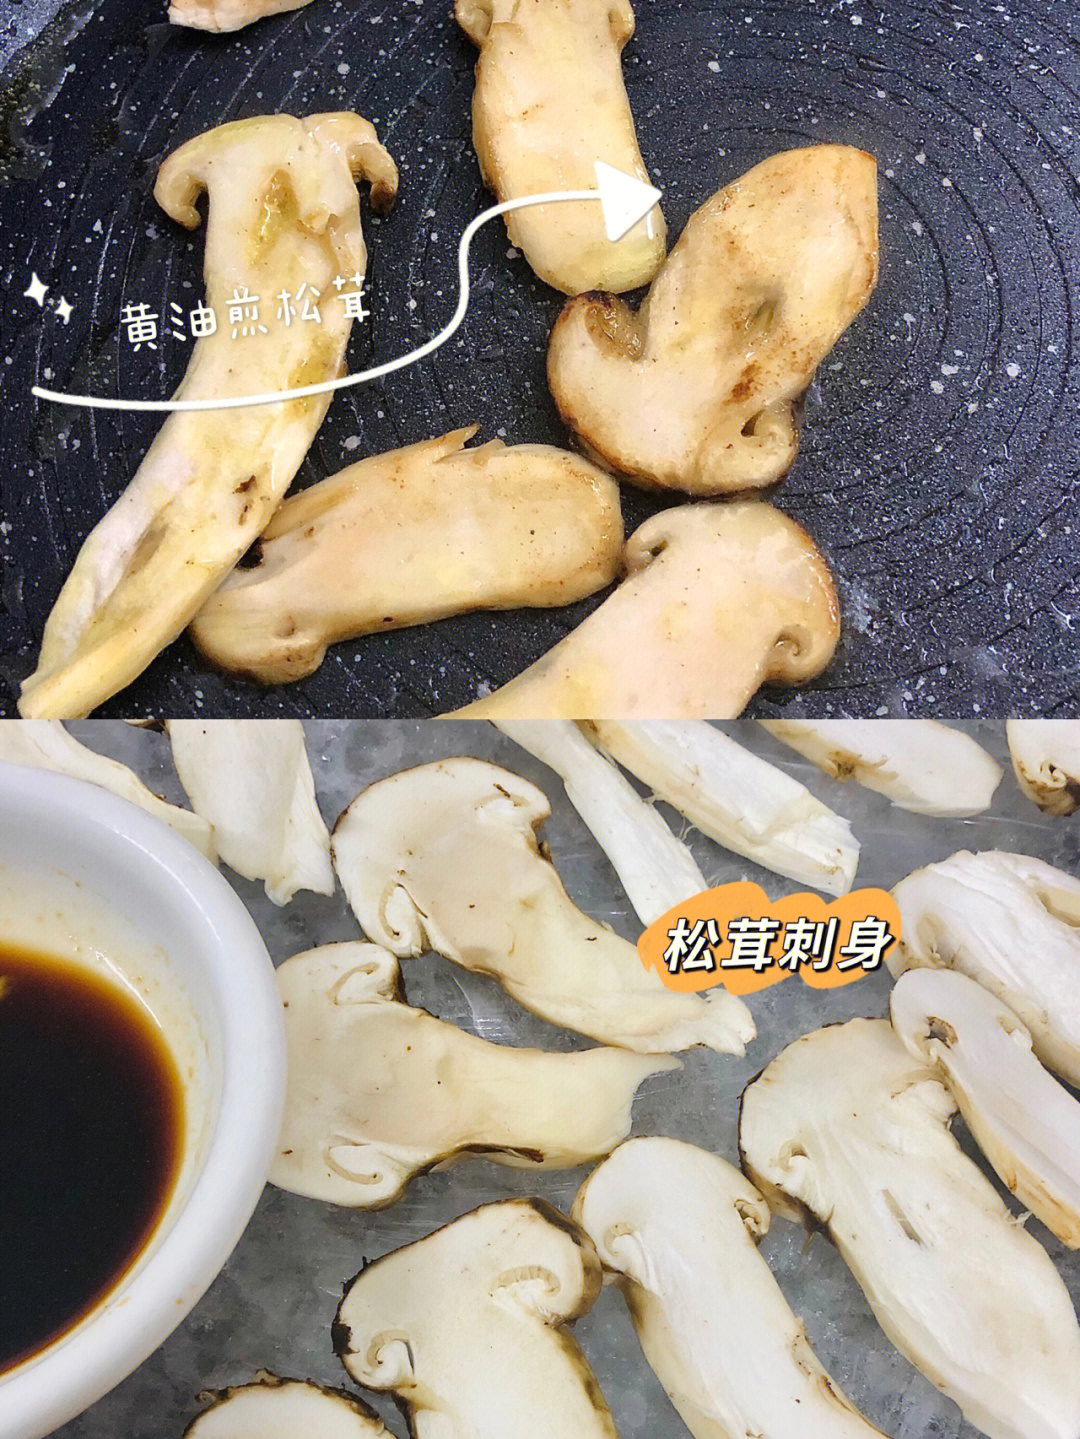 松茸菇怎么吃图片